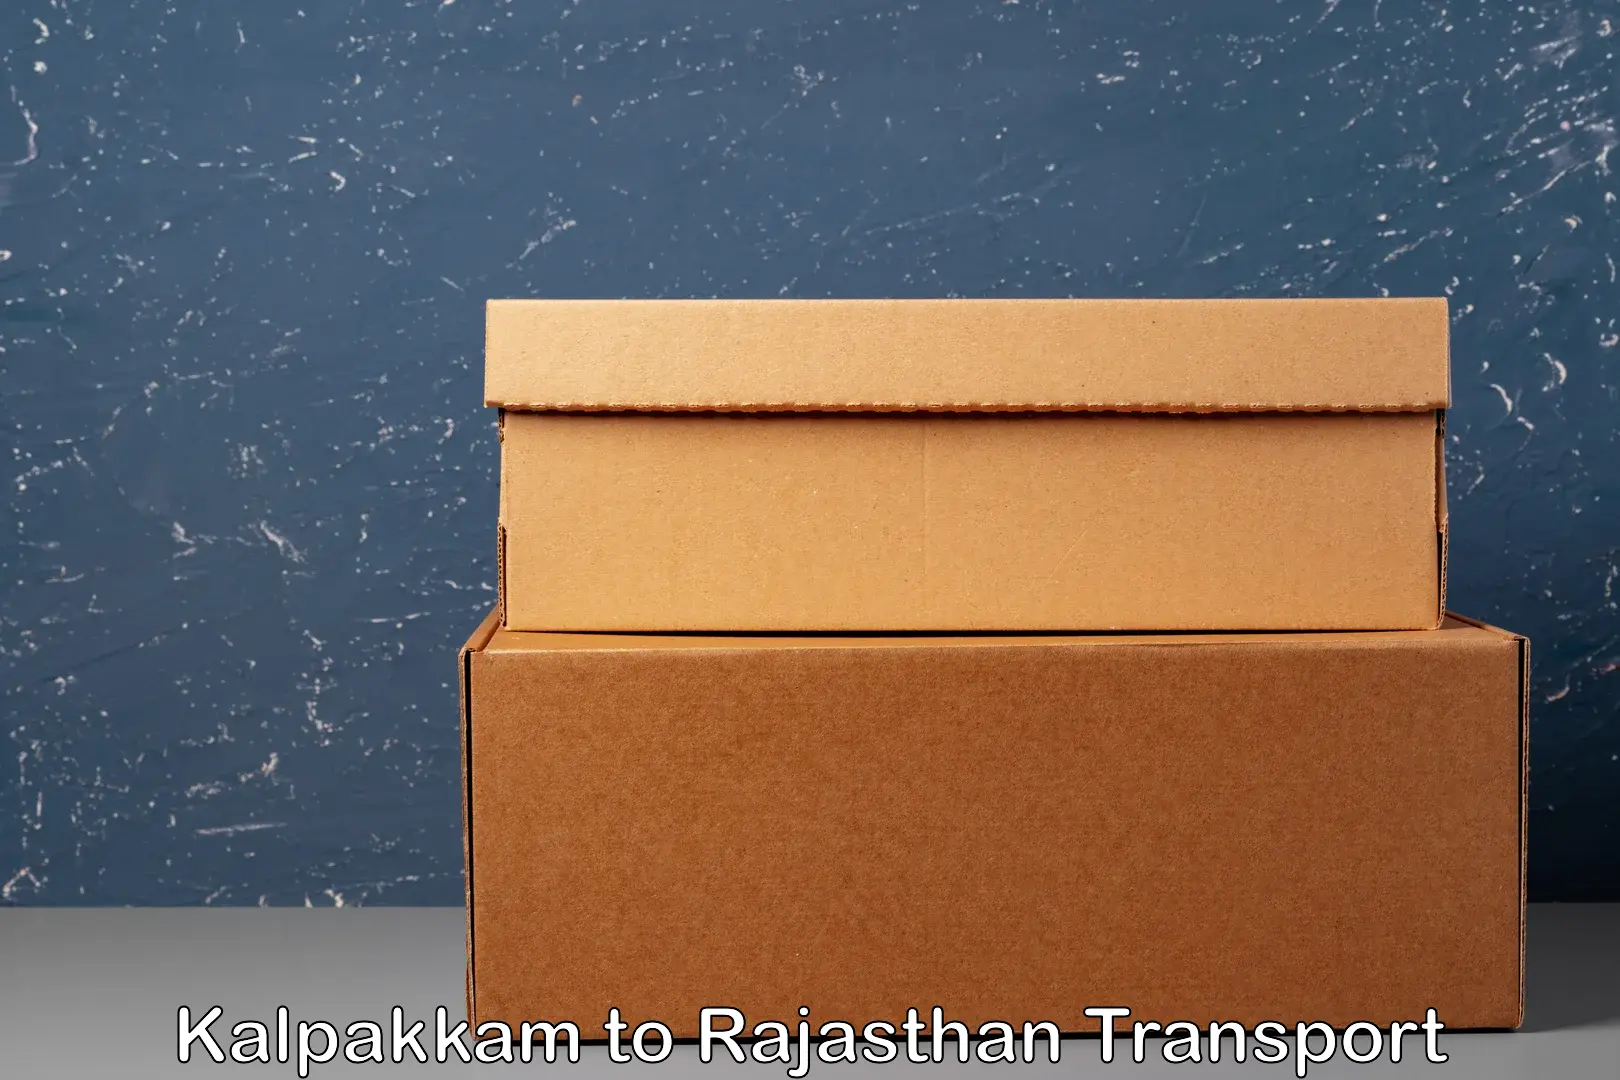 Transport shared services in Kalpakkam to Shahpura Jaipur